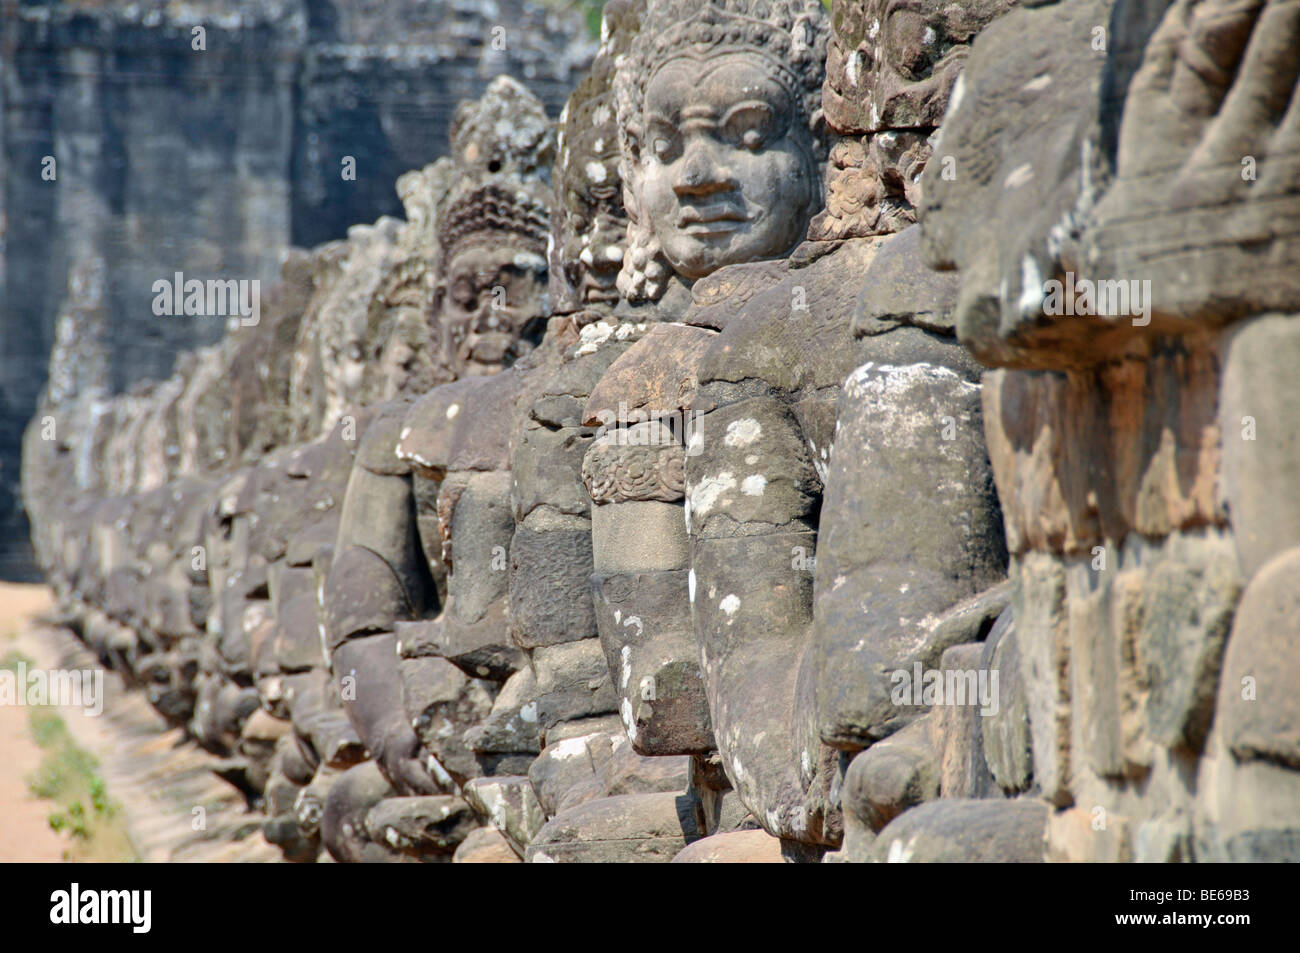 54 göttlichen, furchterregenden Stein Kreaturen flankieren den Zugang zu den Eingangstoren von Angkor Thom, Angkor Wat, Siem Reap, Kambodscha, Stockfoto